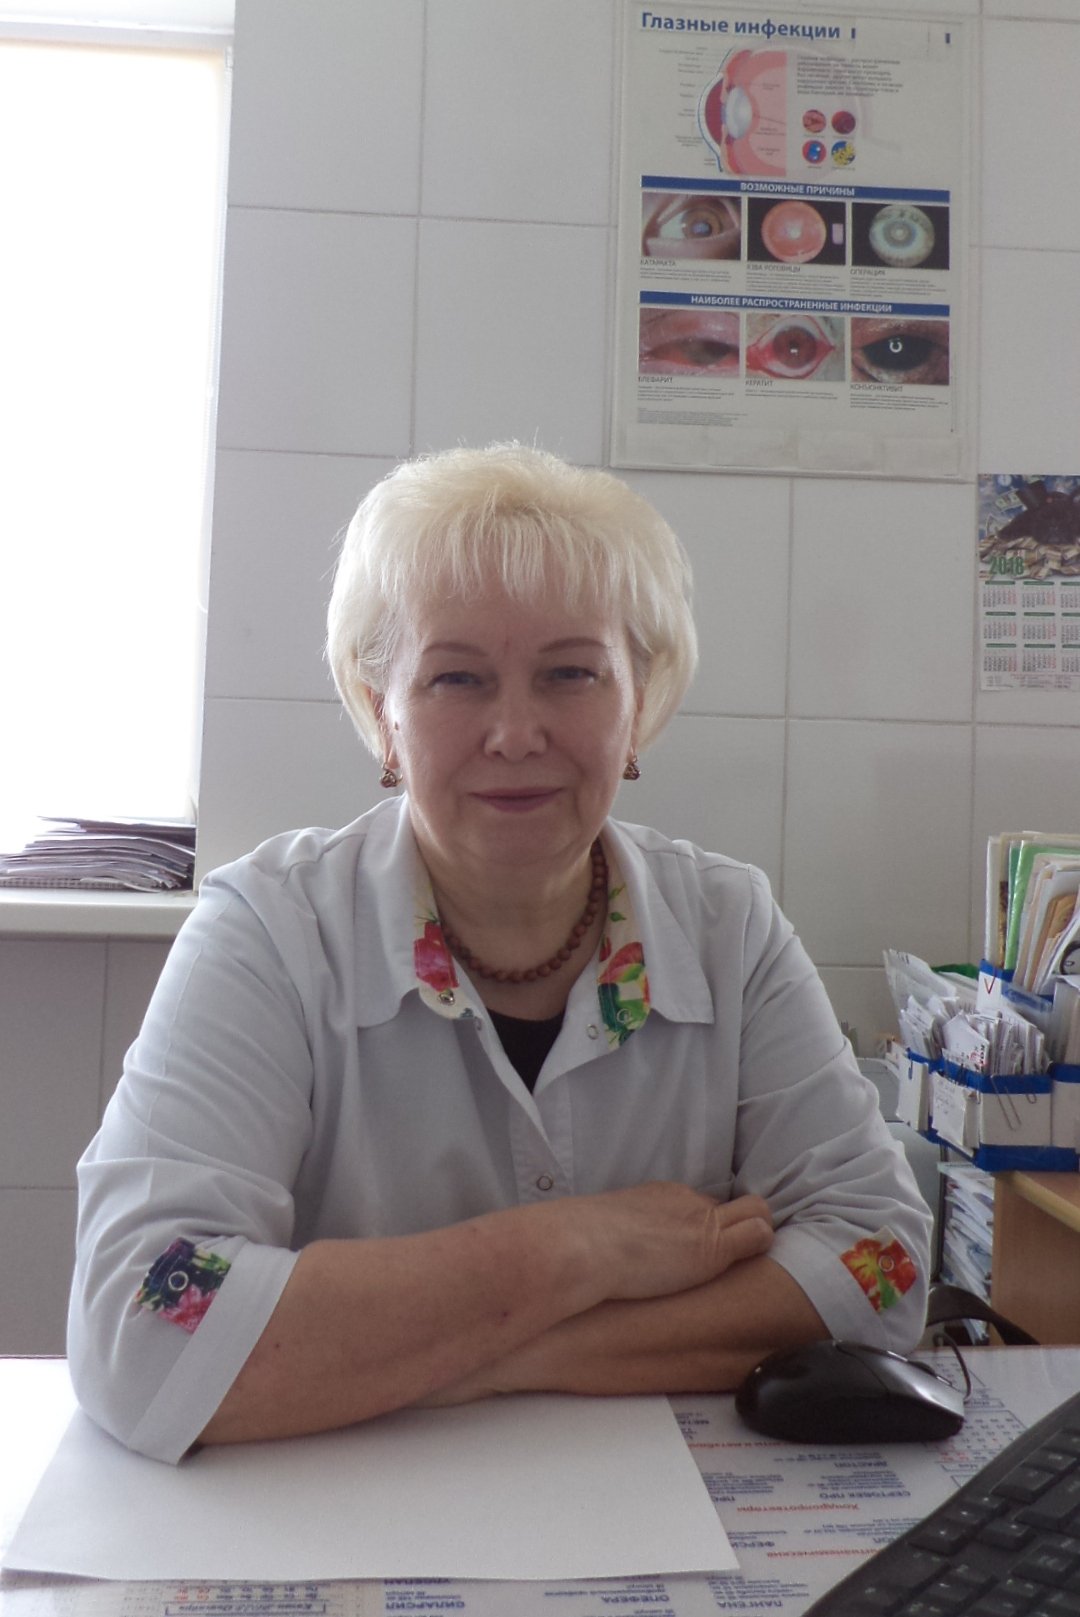  Гашева Наталья Васильевна — врач офтальмолог 